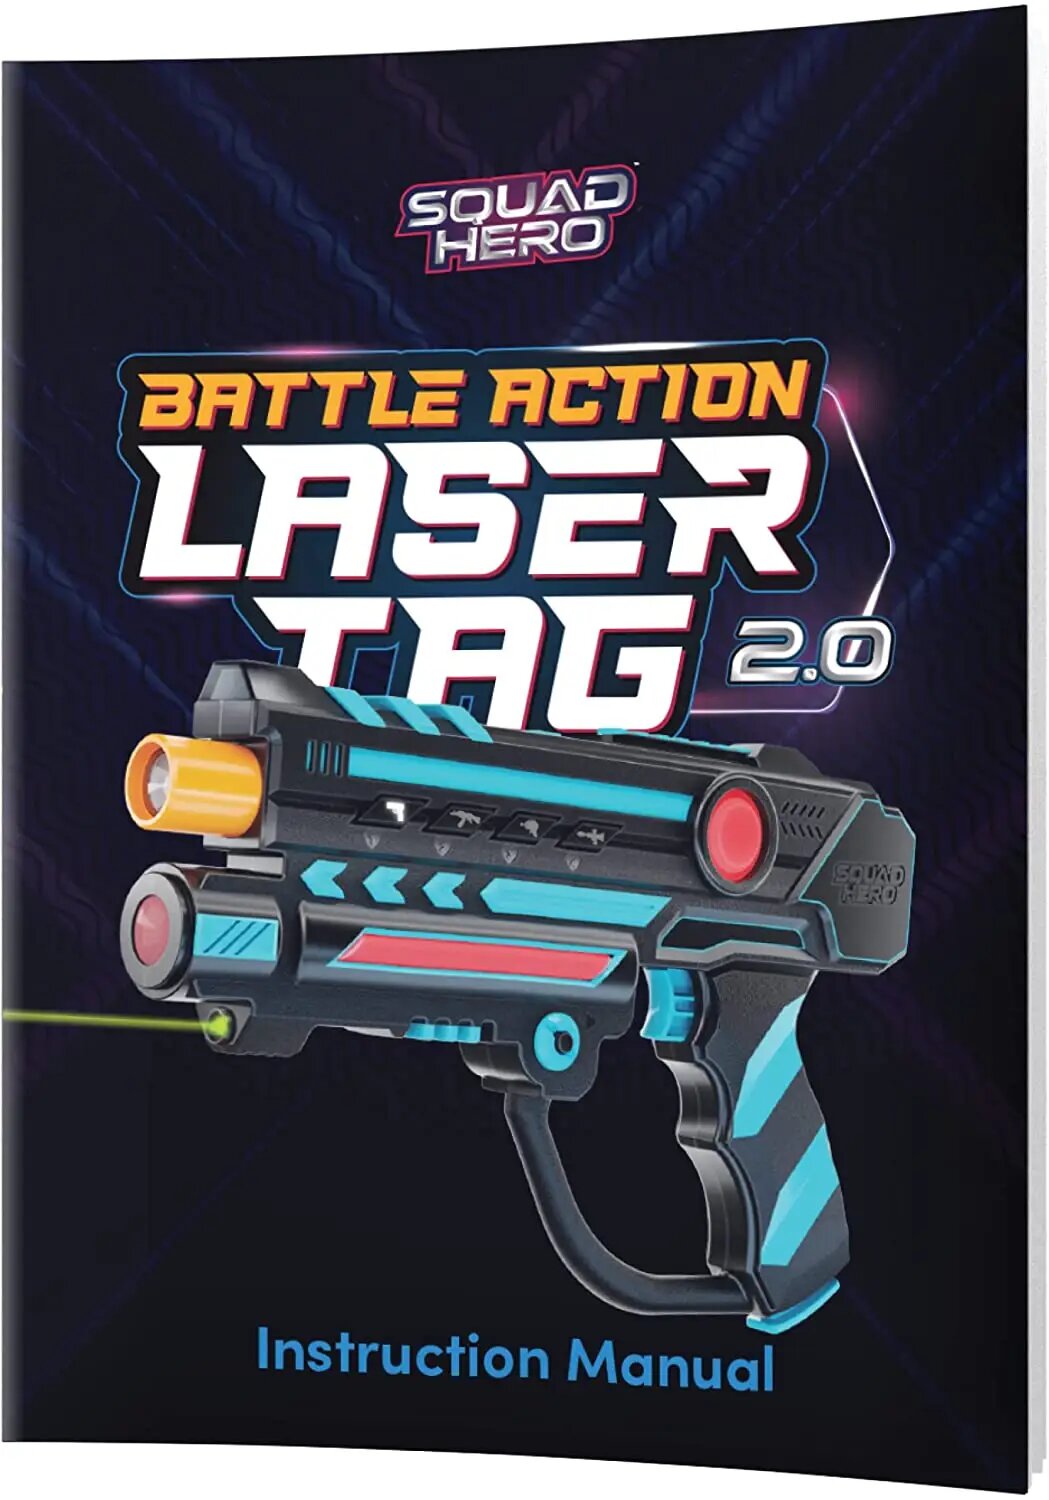 Squad Hero Battle Action Laser Tag 2.0 Das Original aus den USA Top Outdoor Geschenk